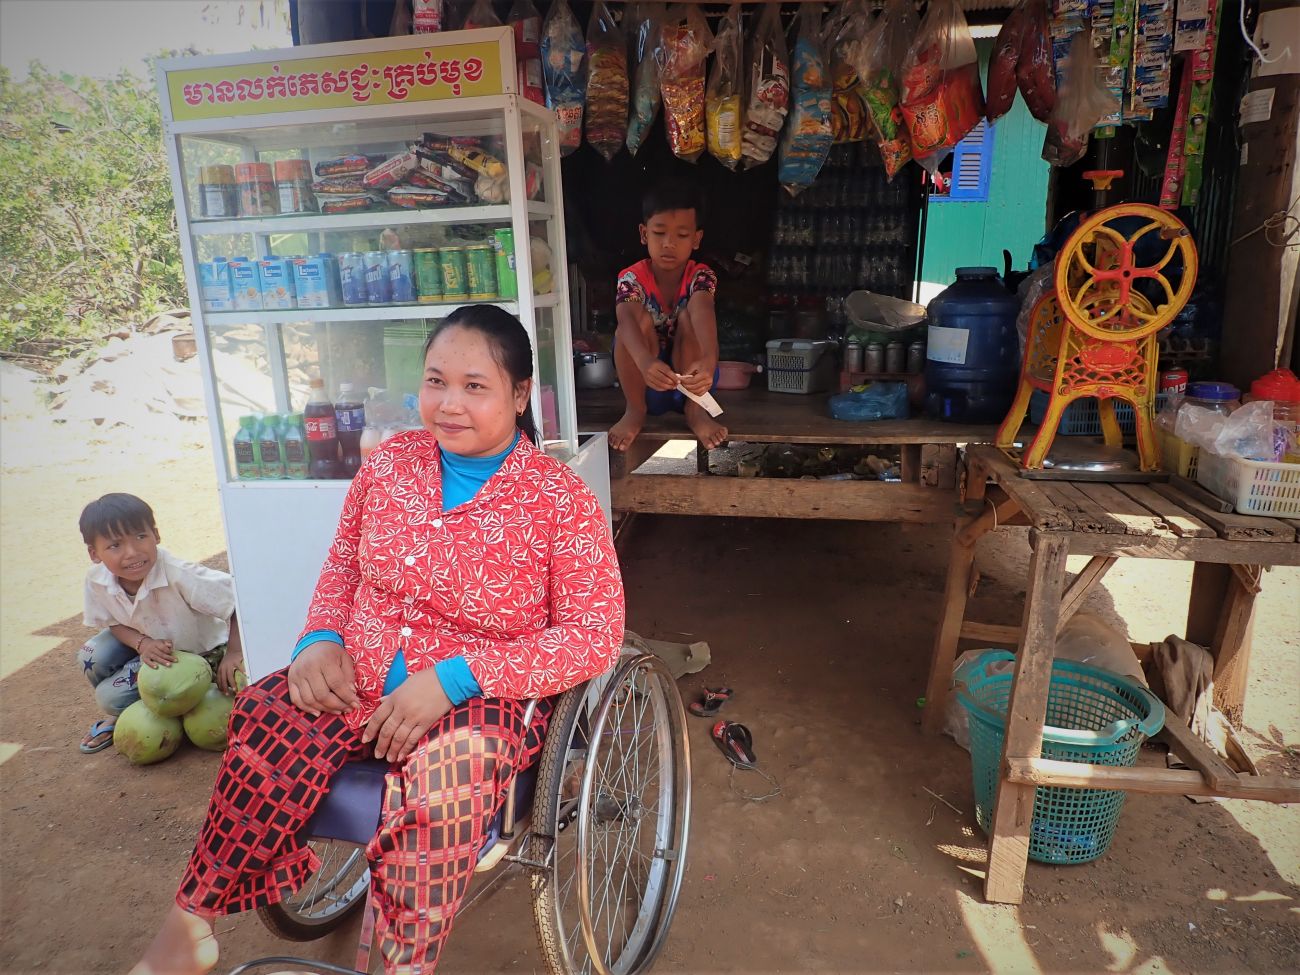 Min Sokly vend des boissons et de la nourriture dans sa petite échoppe, ouverte grâce au soutien de HI. La jeune femme se trouve devant en fauteuil roulant entourée de deux enfants.